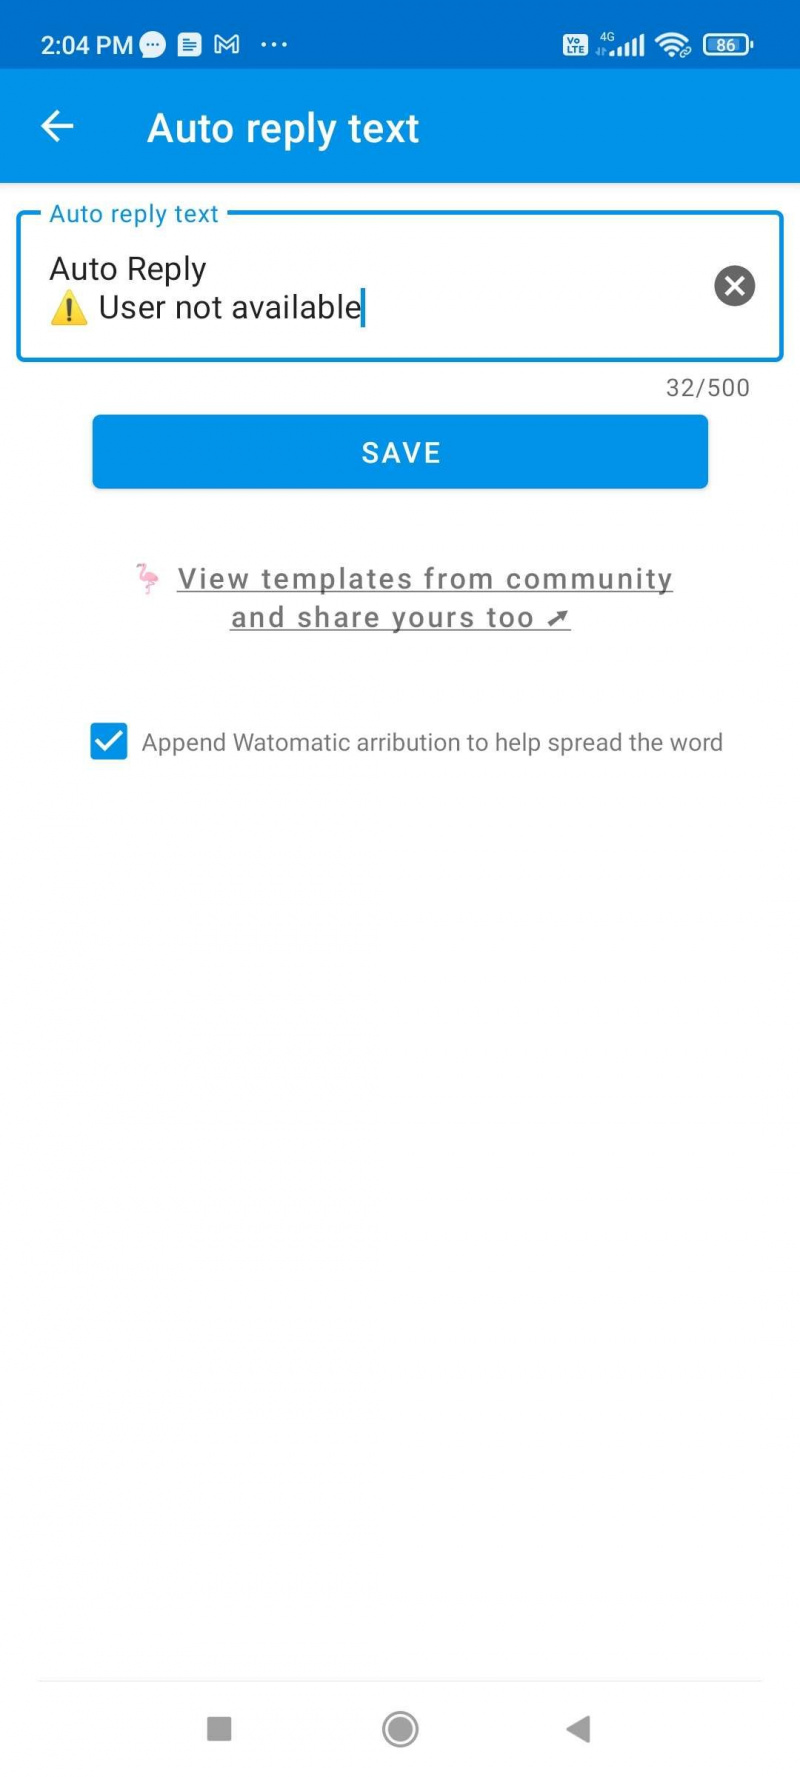   رسالة الرد التلقائي على Watomatic قابلة للتخصيص ، وتدعم الرموز ، وتوفر أيضًا الإلهام من مجتمع Reddit الخاص بها